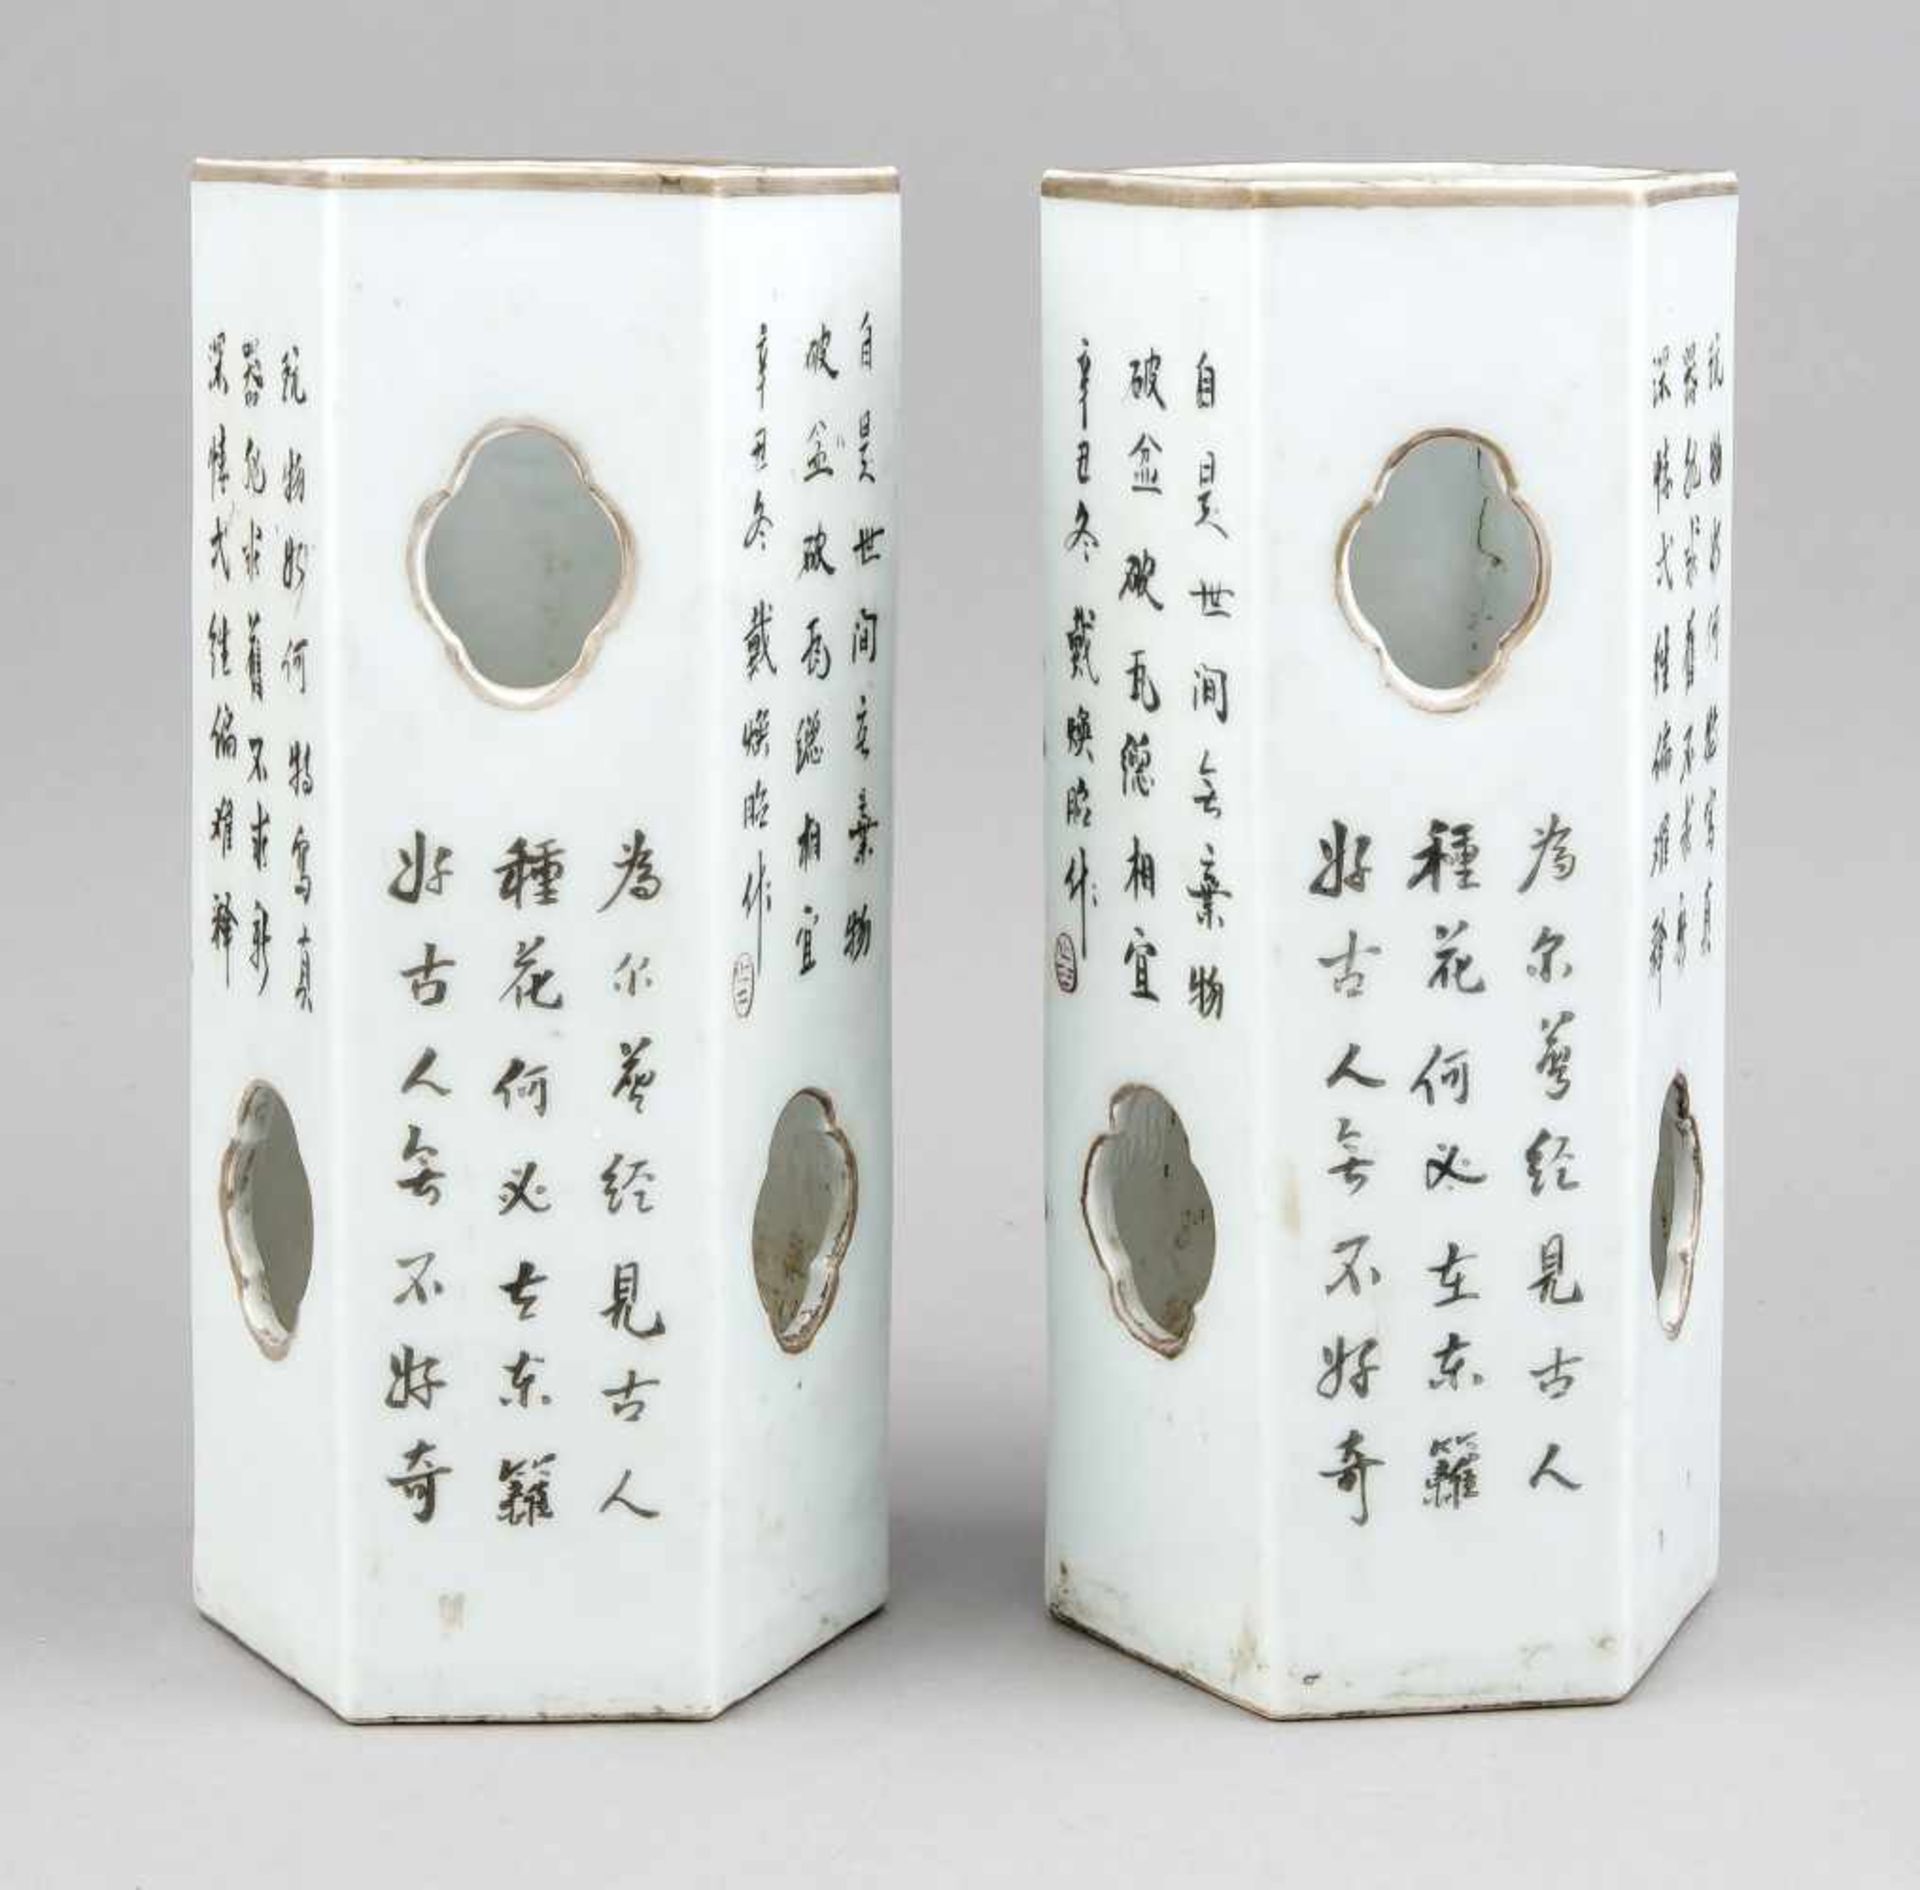 Paar Hutständer, China, wohl 18. Jh., hexagonale, zylindrische Form mitvierpassigen Luftlöchern. - Bild 2 aus 3